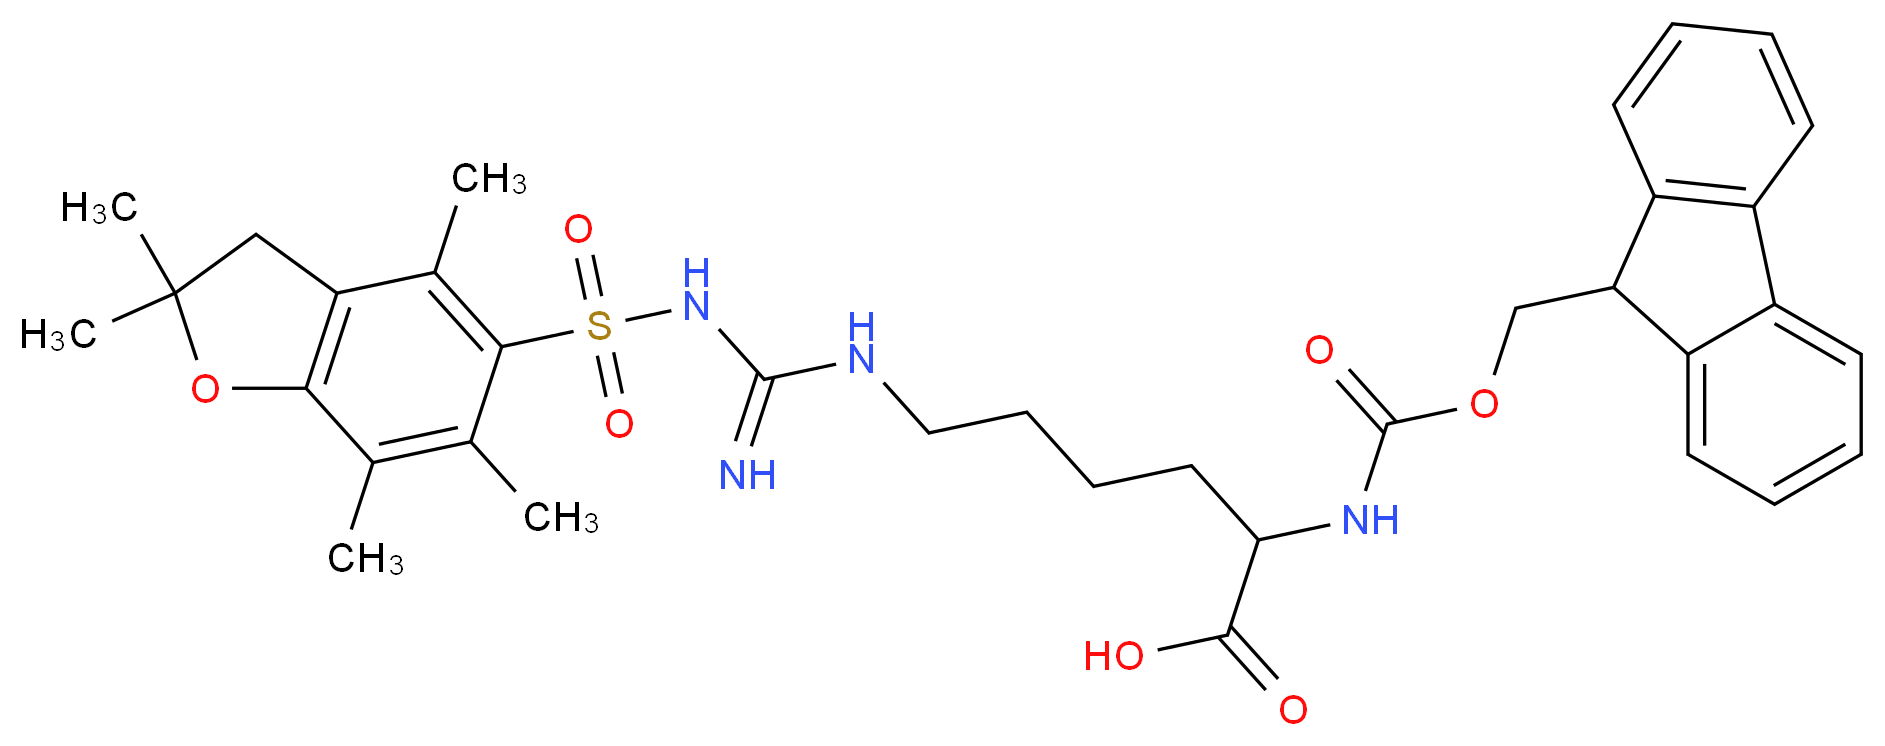 401915-53-5 molecular structure